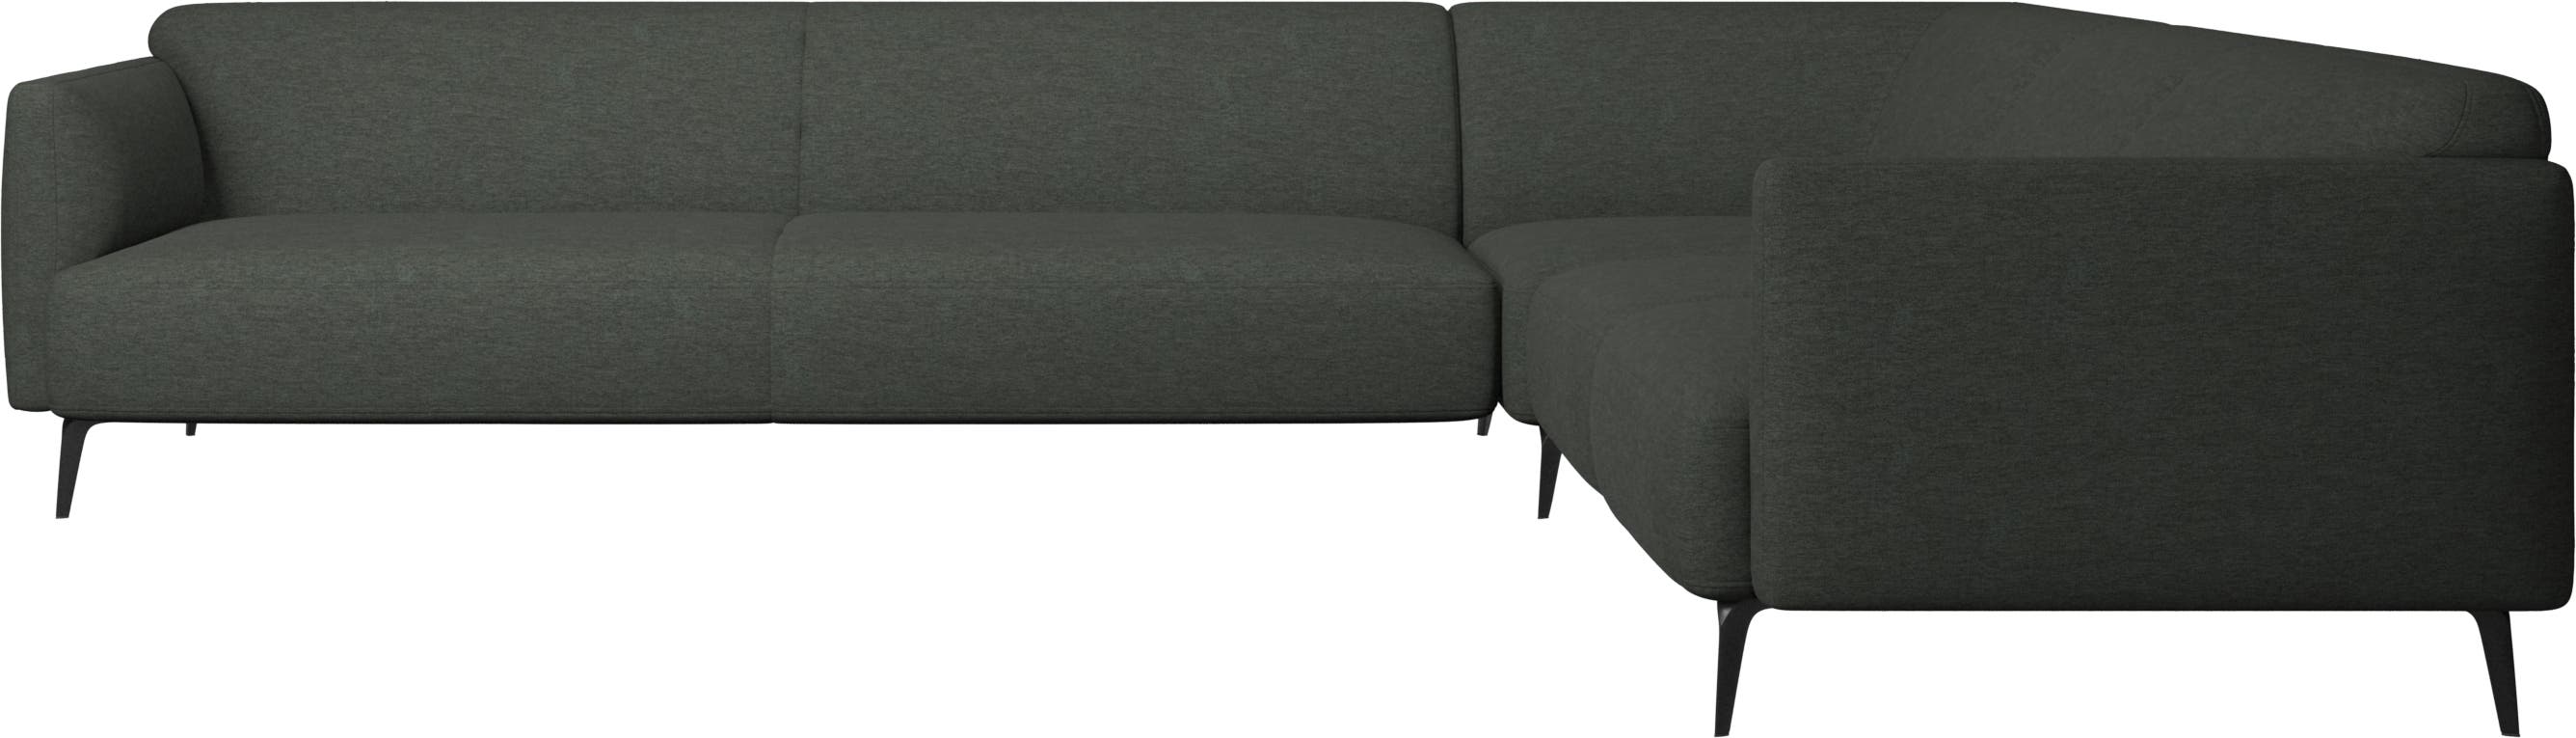 Modena corner sofa